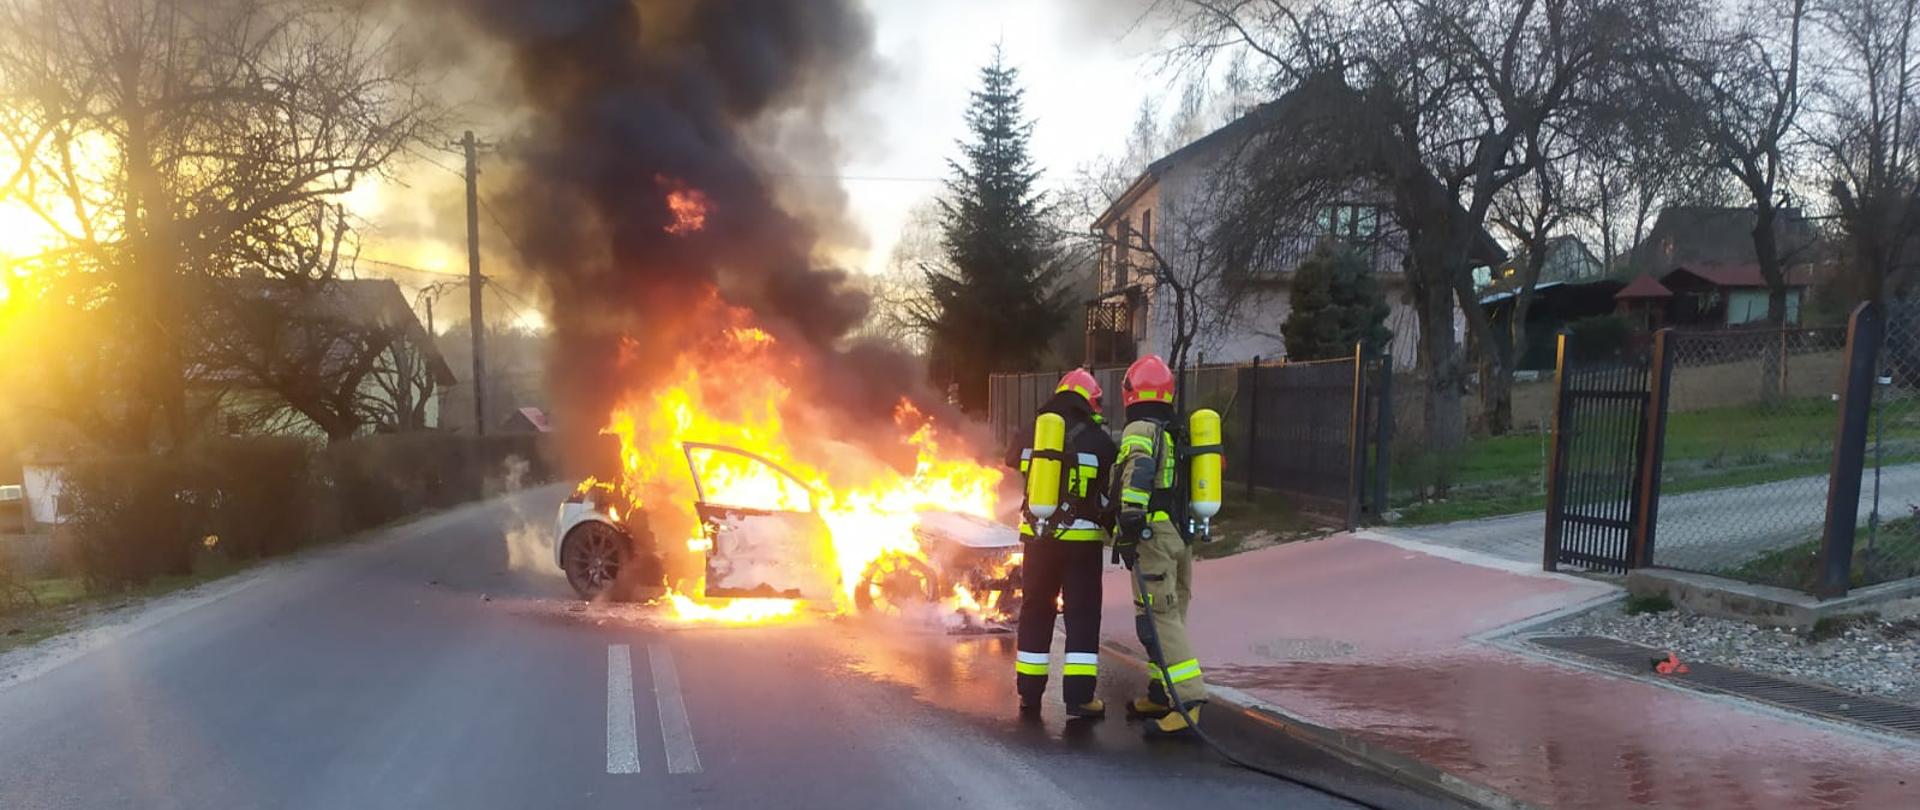 Na jezdni widoczny jest objęty ogniem samochód osobowy. Przed nim dwóch strażaków w umundurowaniu specjalnym z linią szybkiego natarcia podejmujących działania gaśnicze. Na drugim planie widoczne zabudowania miejscowości.